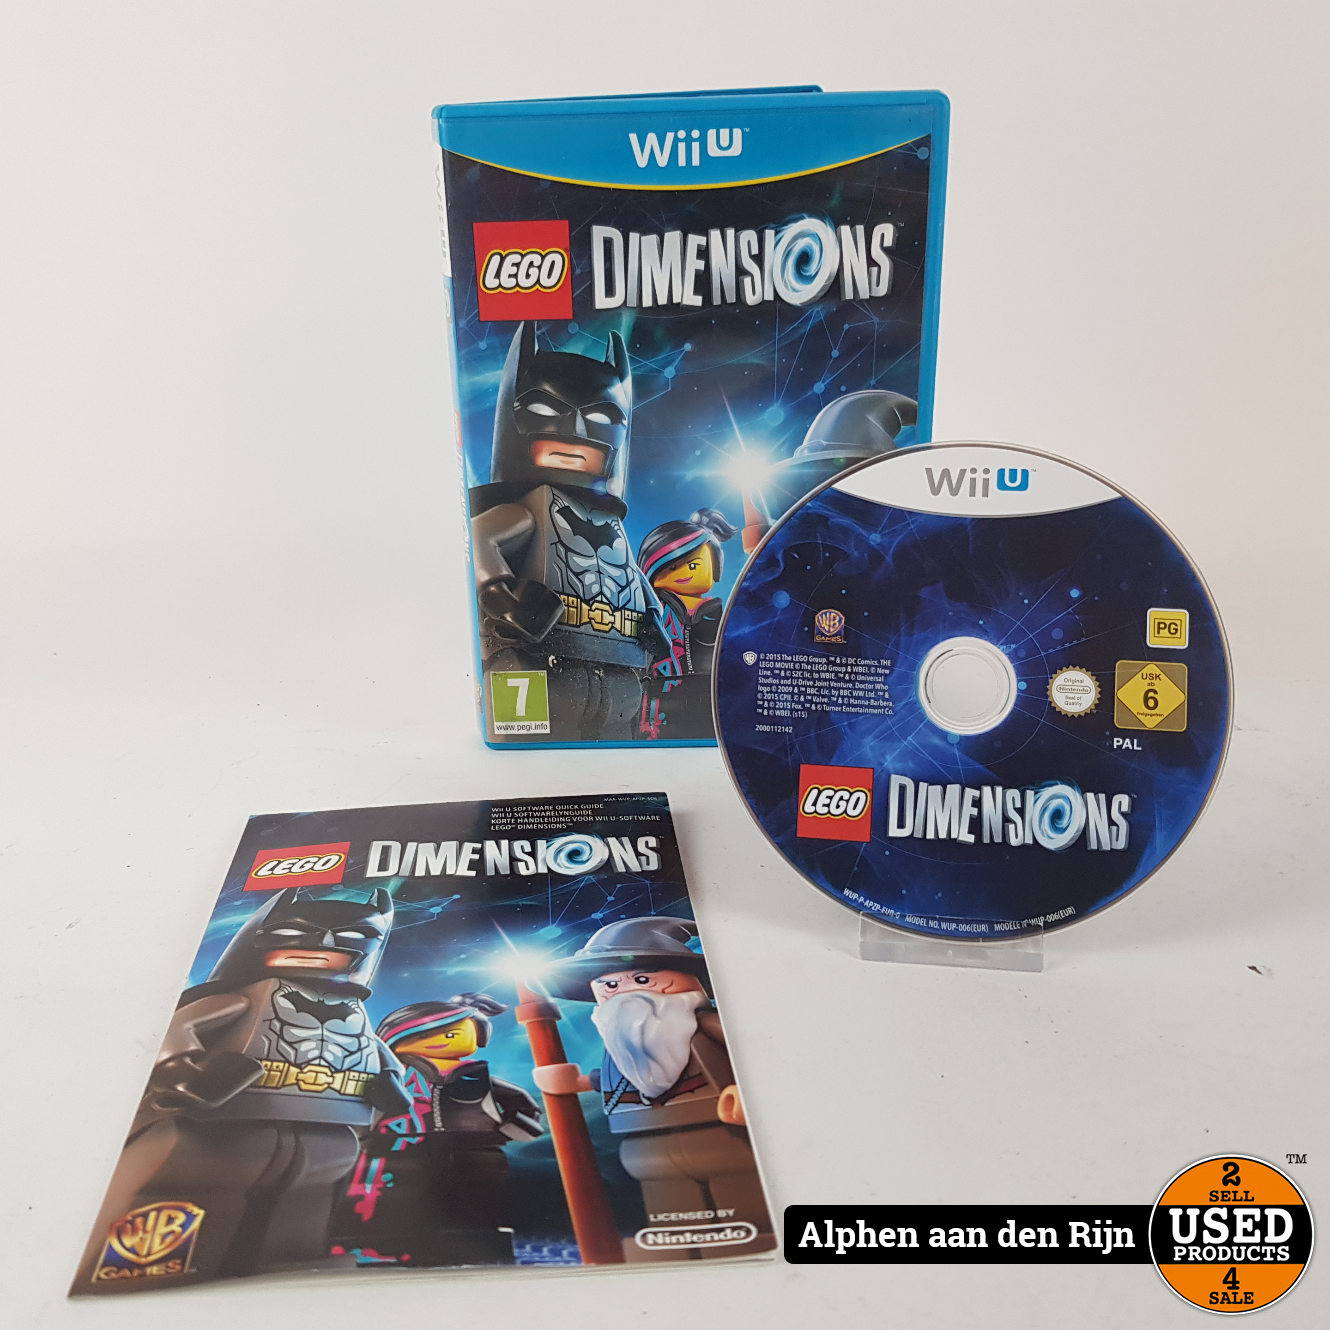 belediging heilig Slager Lego Dimensions Wii U - Used Products Alphen aan den Rijn